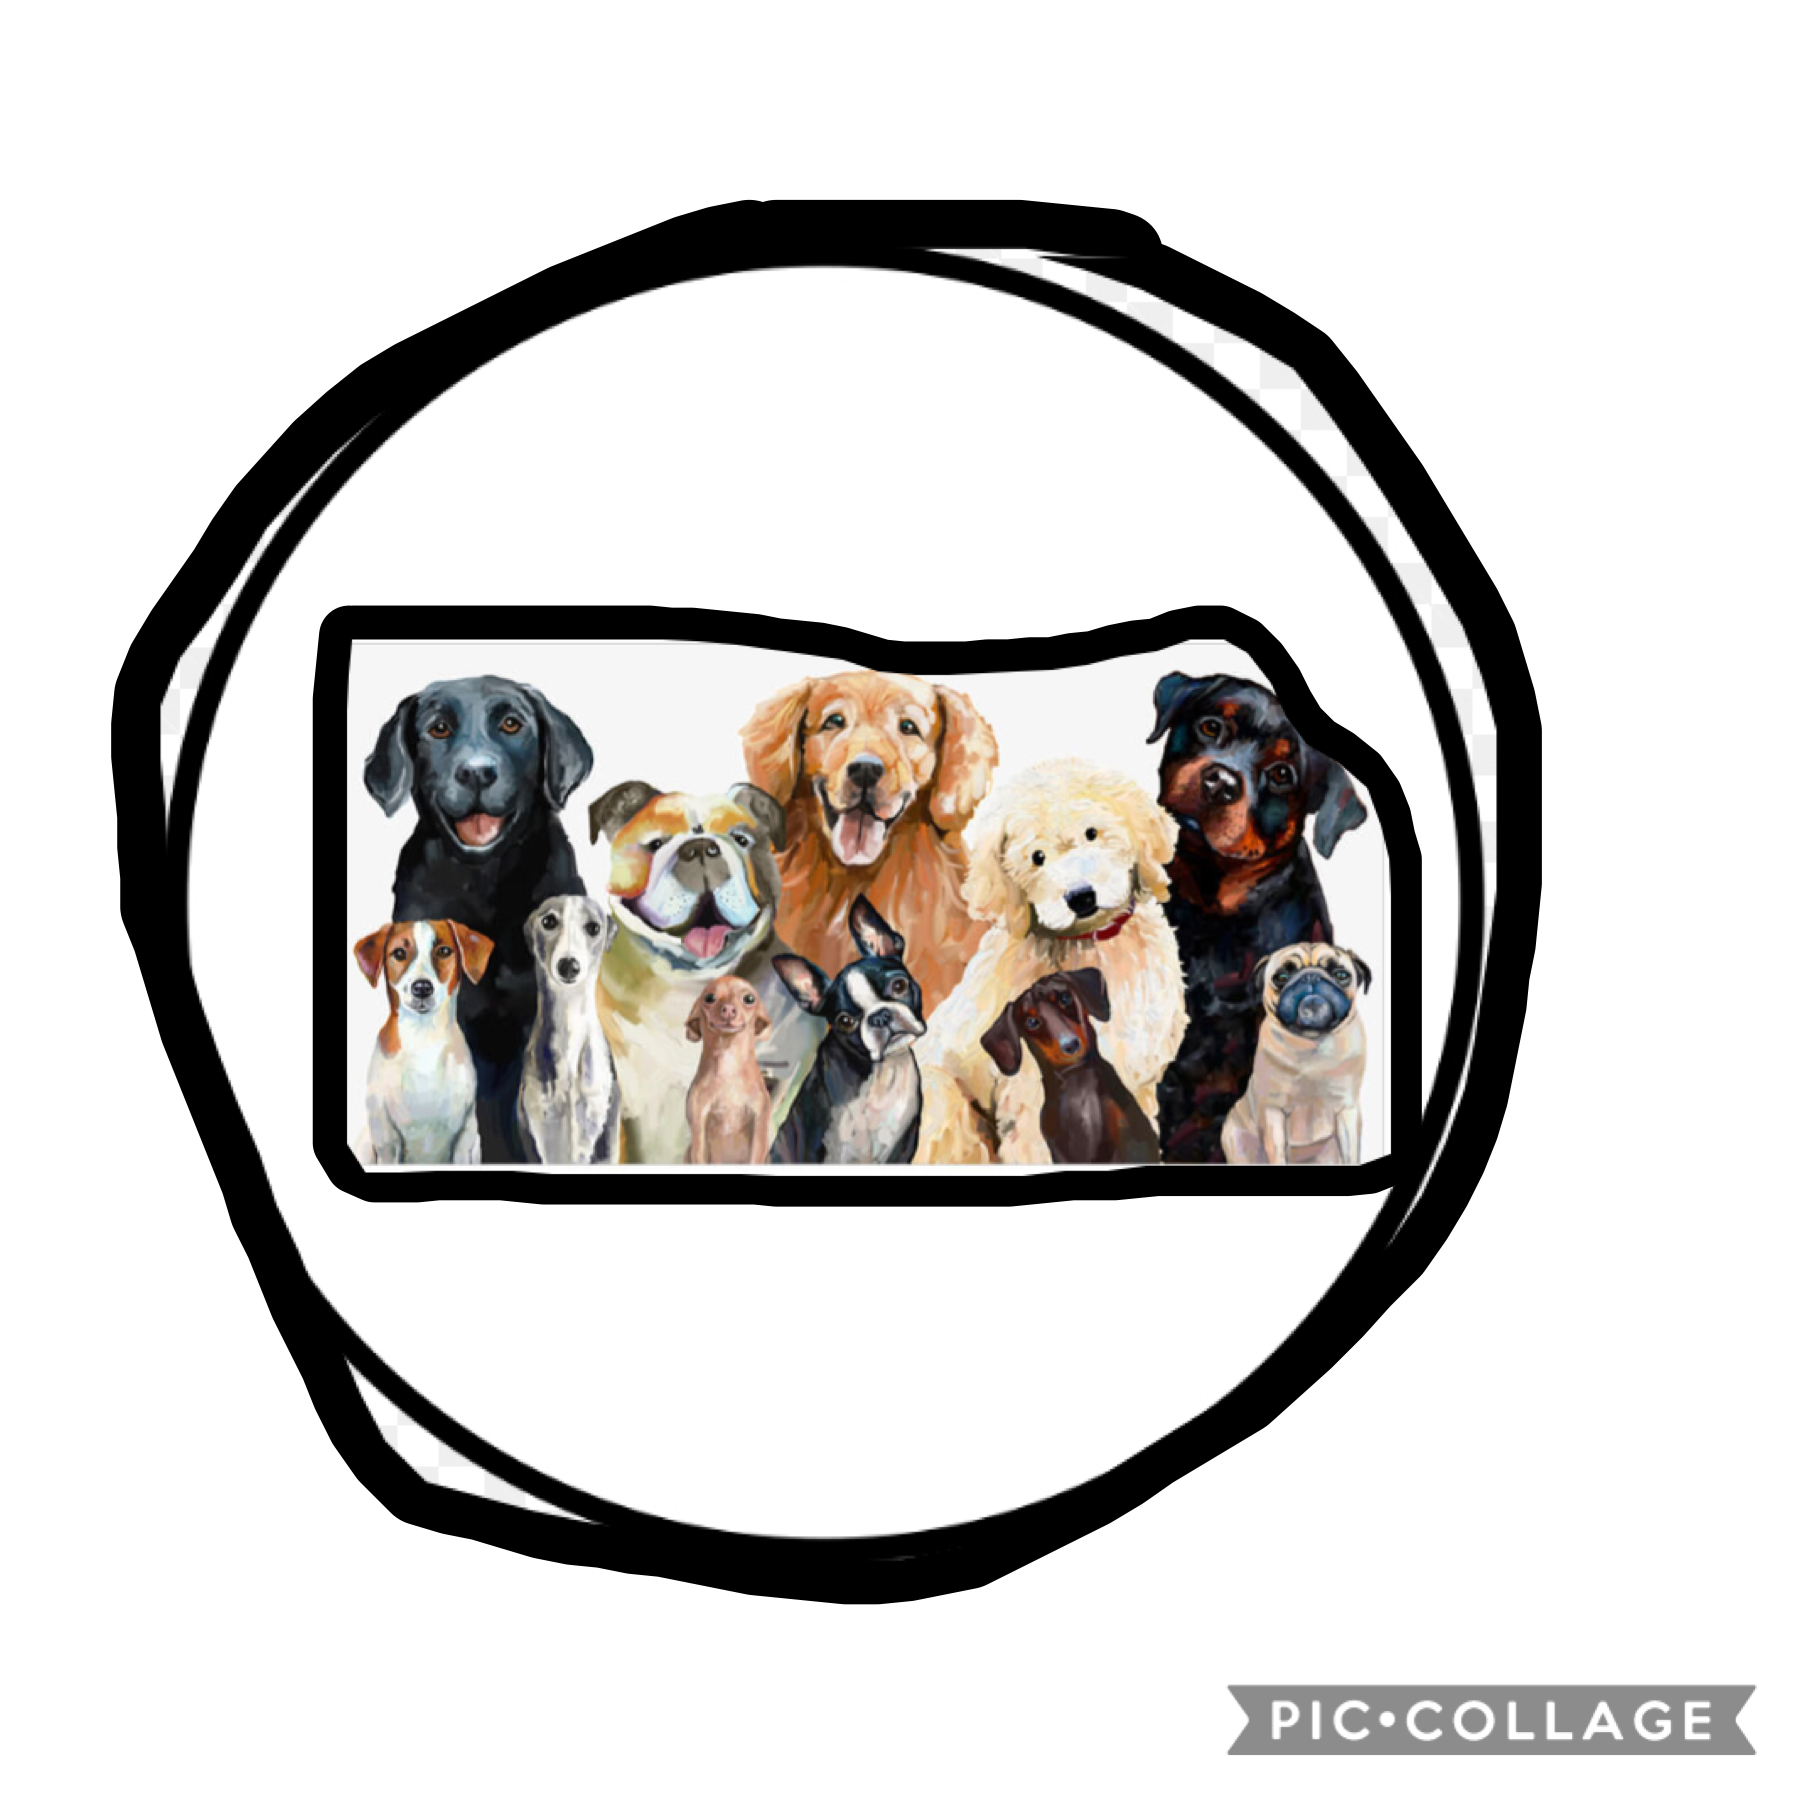 For Samara’s dog circle thing 